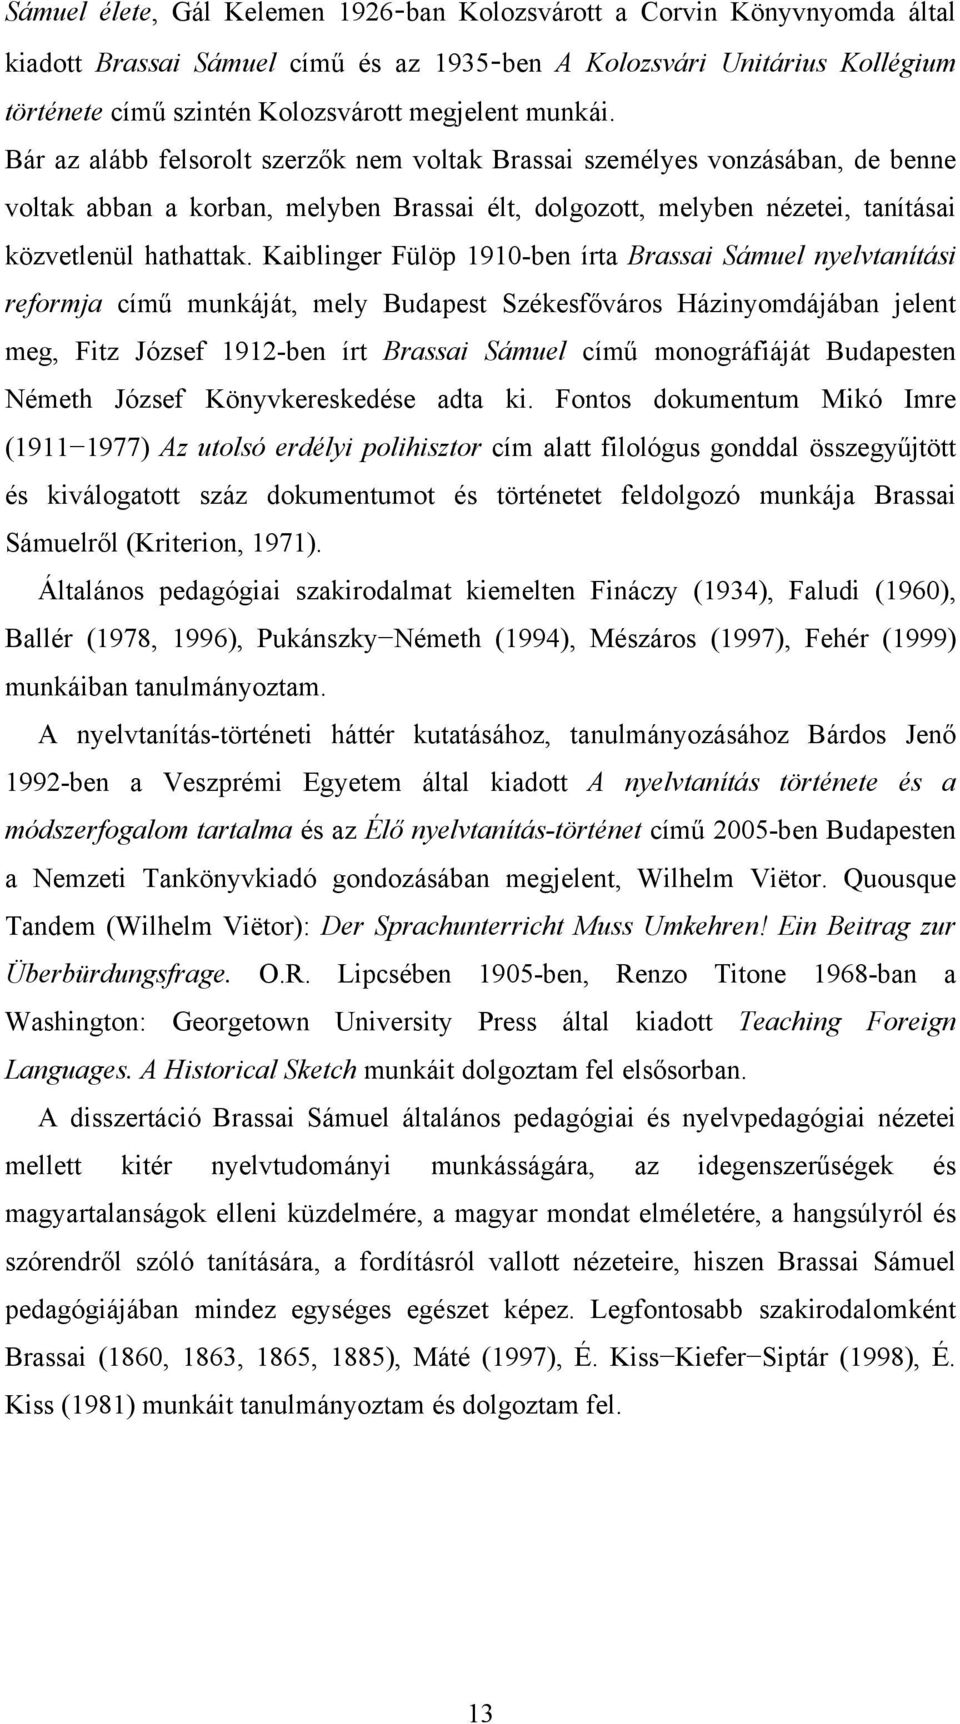 Kaiblinger Fülöp 1910-ben írta Brassai Sámuel nyelvtanítási reformja című munkáját, mely Budapest Székesfőváros Házinyomdájában jelent meg, Fitz József 1912-ben írt Brassai Sámuel című monográfiáját